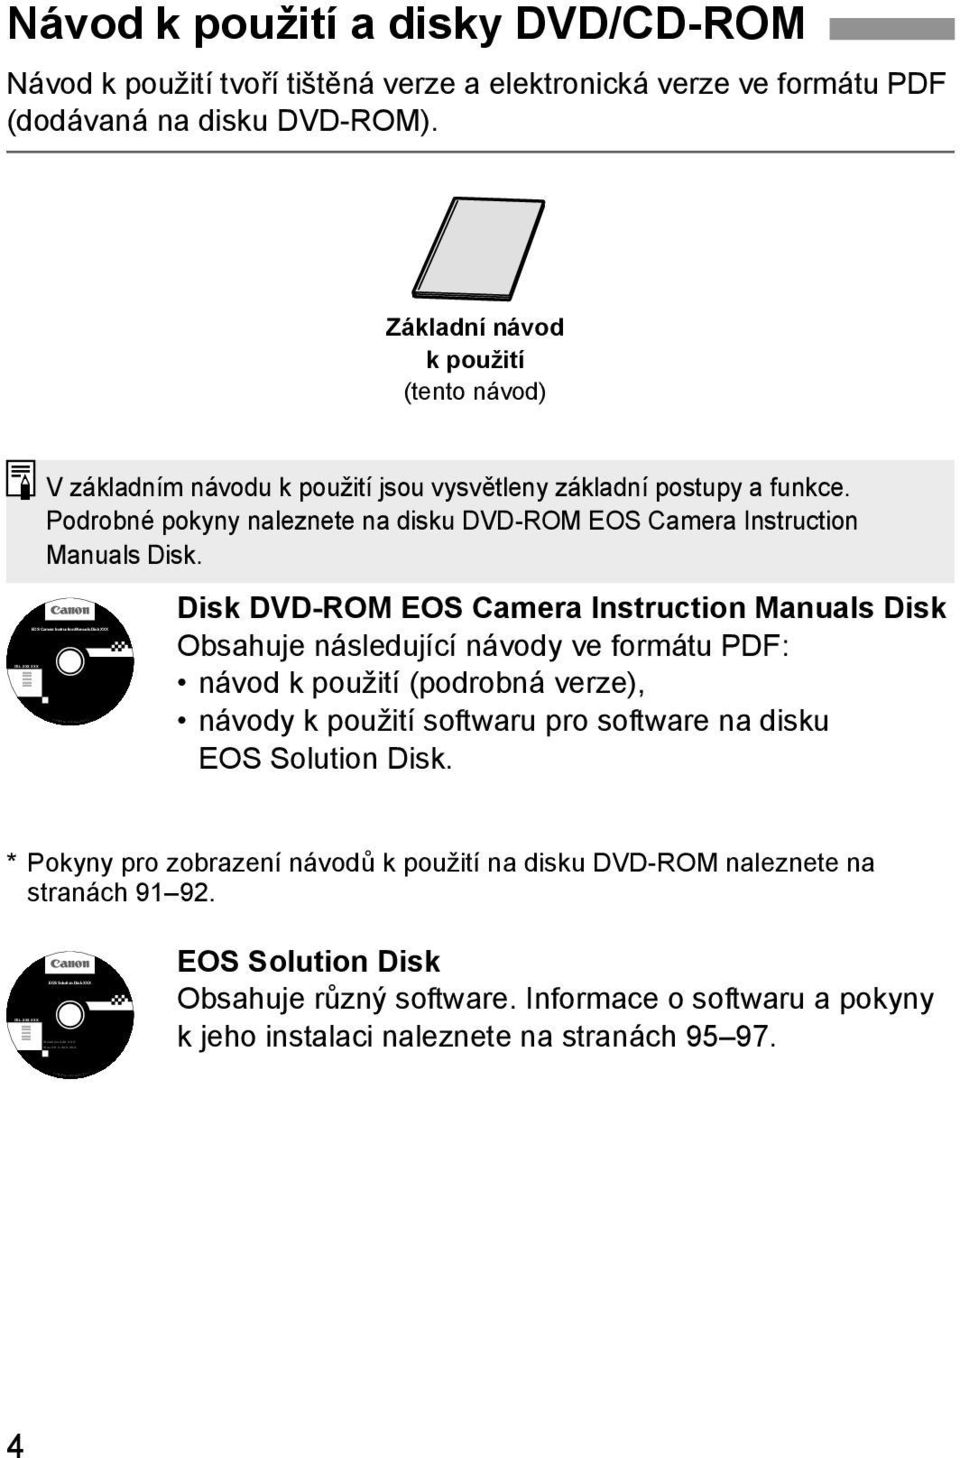 Návod k použití a disky DVD/CD-ROM Návod k použití tvoří tištěná verze a elektronická verze ve formátu PDF (dodávaná na disku DVD-ROM).